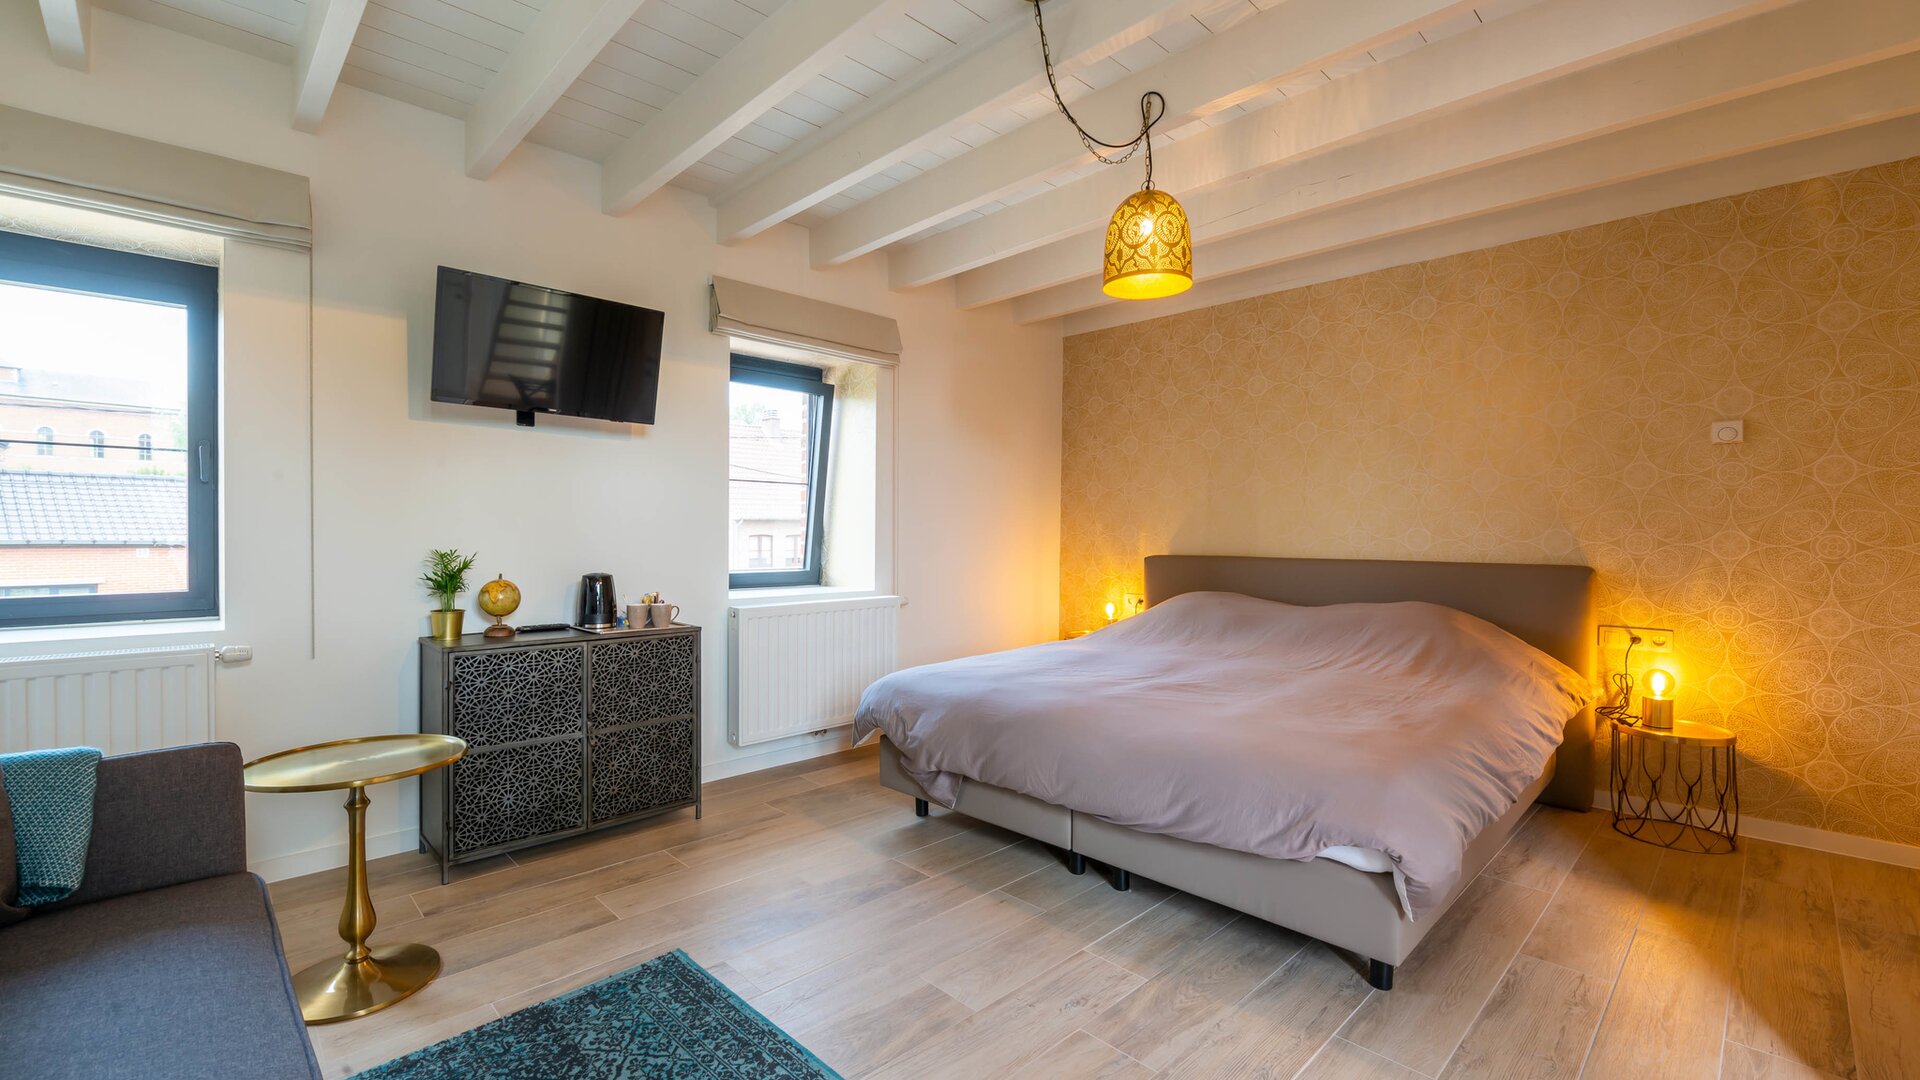 Vakantiewoning De Lokroep - Oosterse slaapkamer 1ste verdiep met ensuite badkamer en balkon